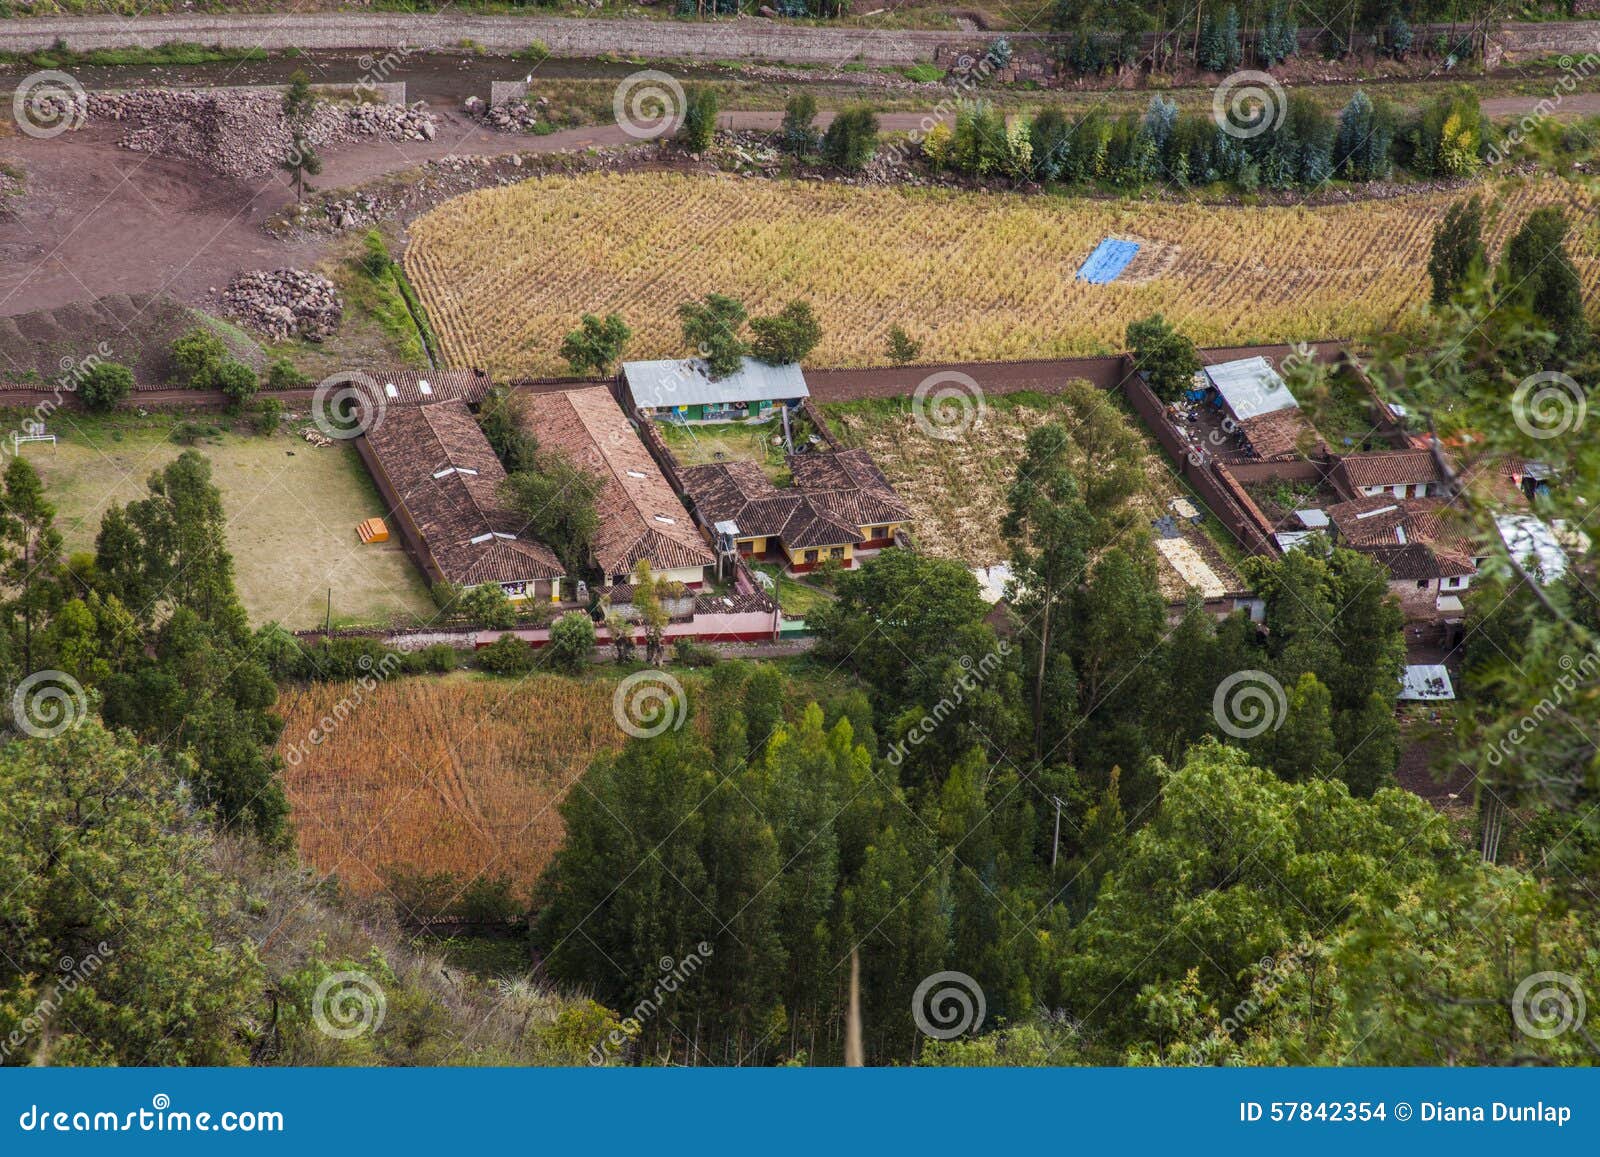 farm in the urubamba river vally, peru